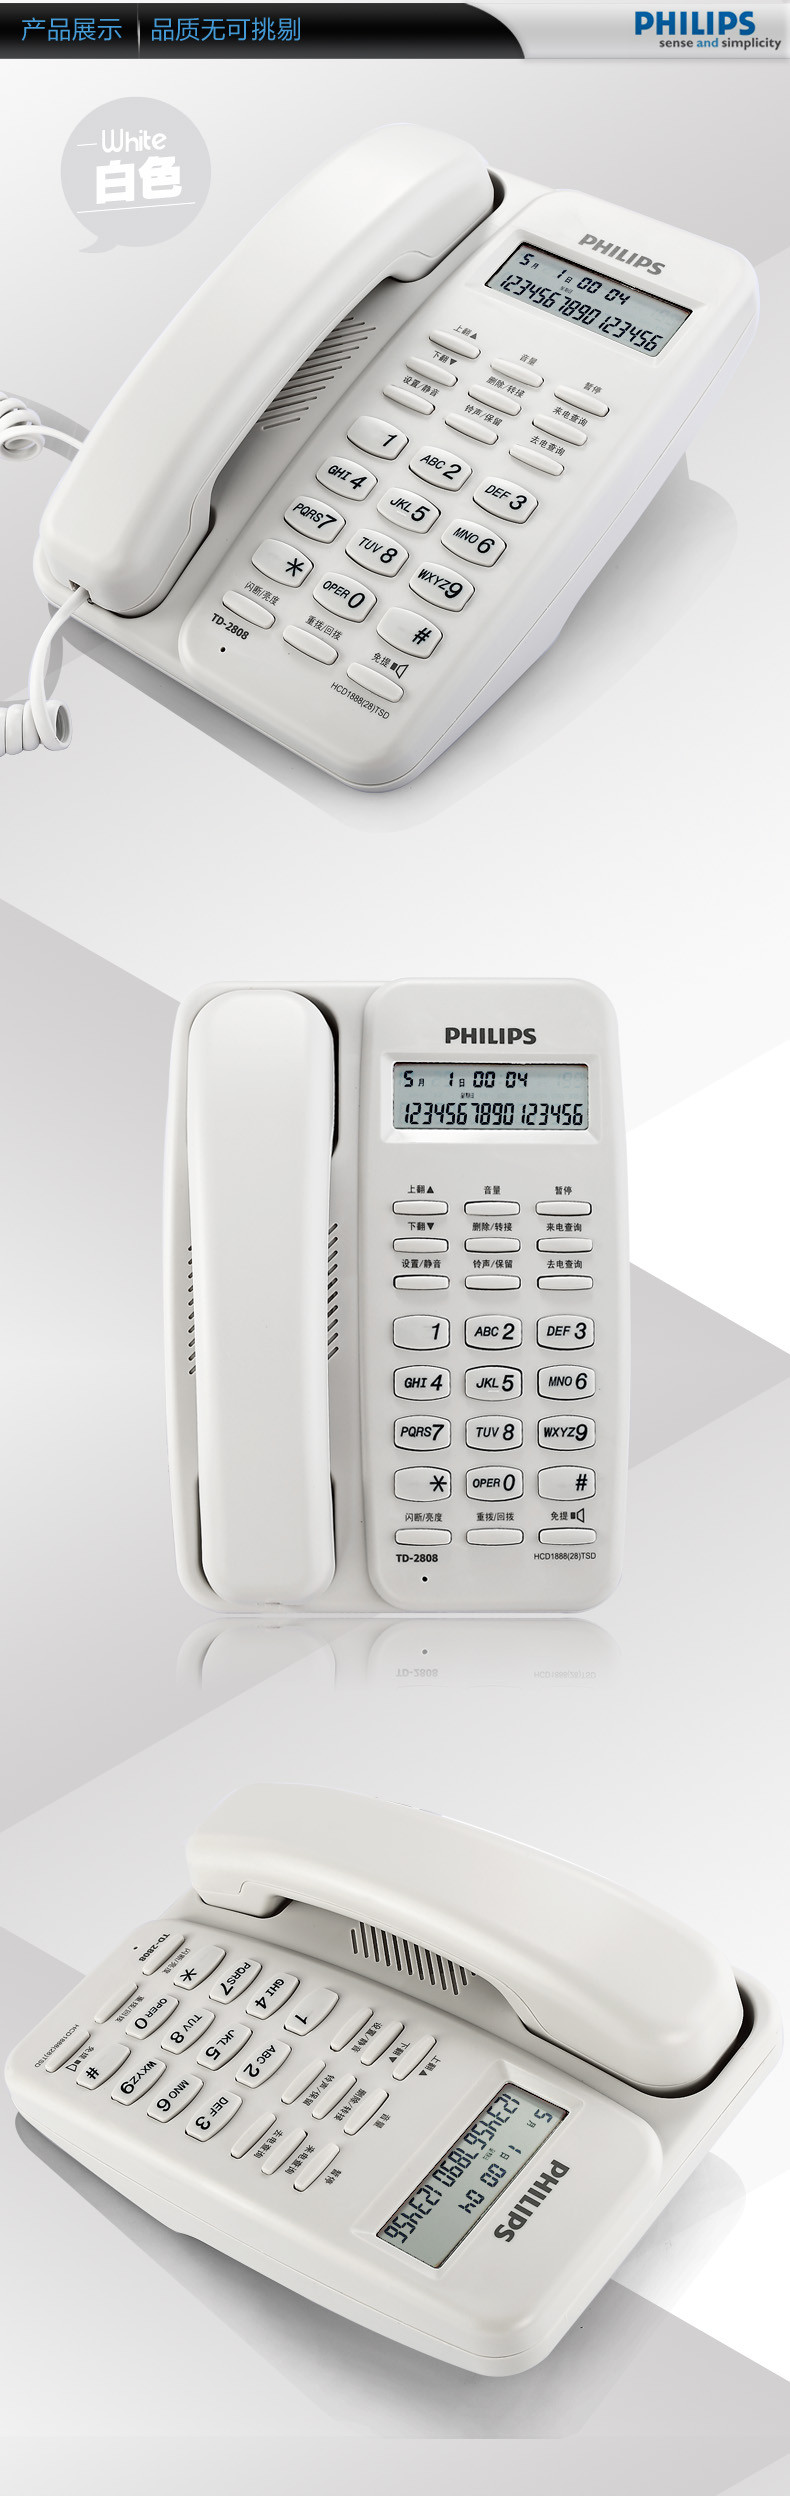 飞利浦(Philips)TD-2808 有绳话机 /普通家用/办公话机/来电显示/免电池/固定电话座机 (黑色)